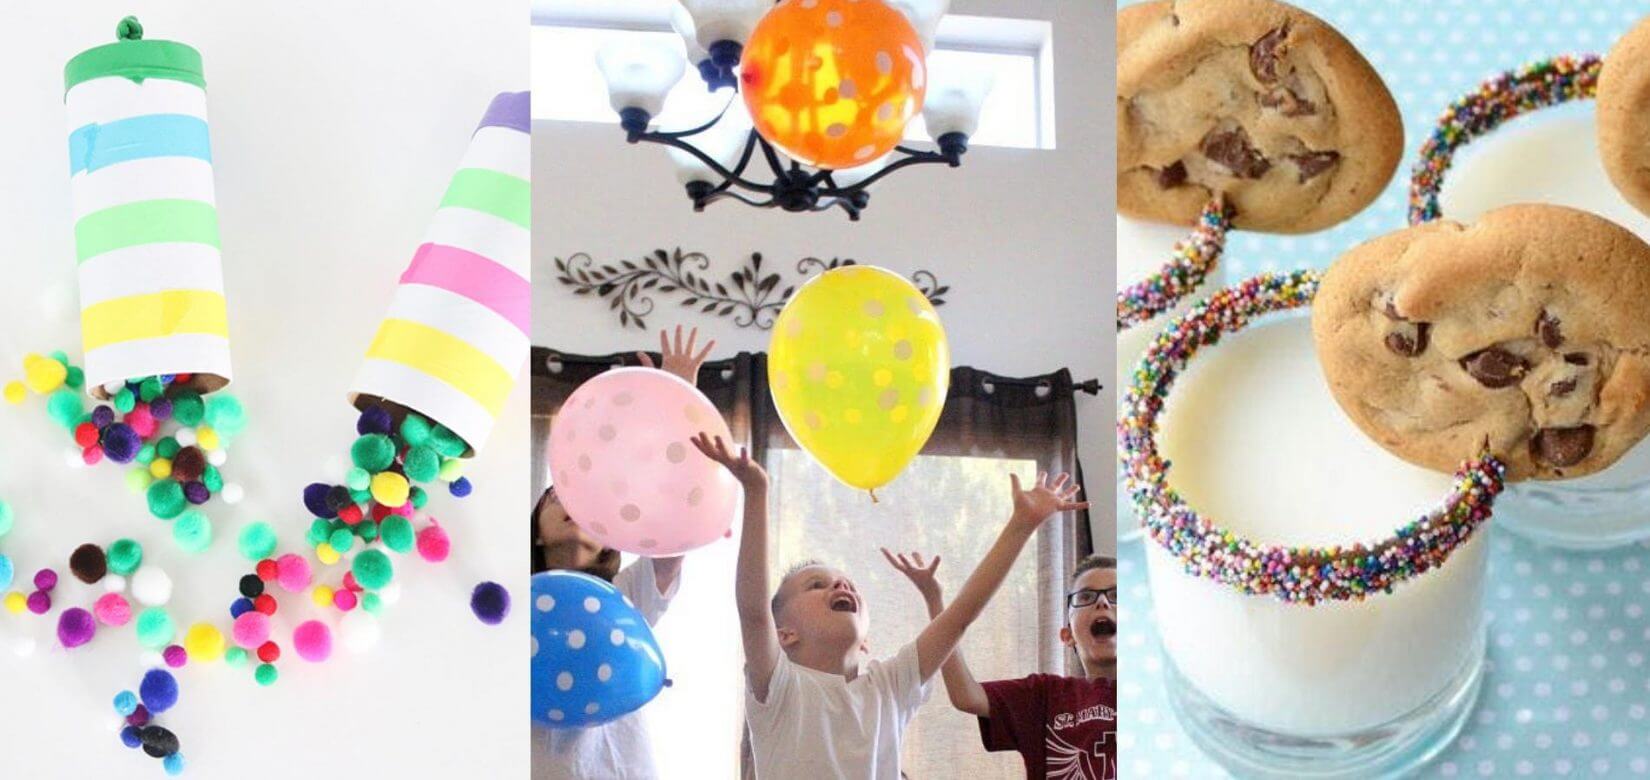 Πρωτοχρονιά: Η νέα μόδα "προστάζει" γιορτινά παιδικά πάρτι το μεσημέρι της Παραμονής!